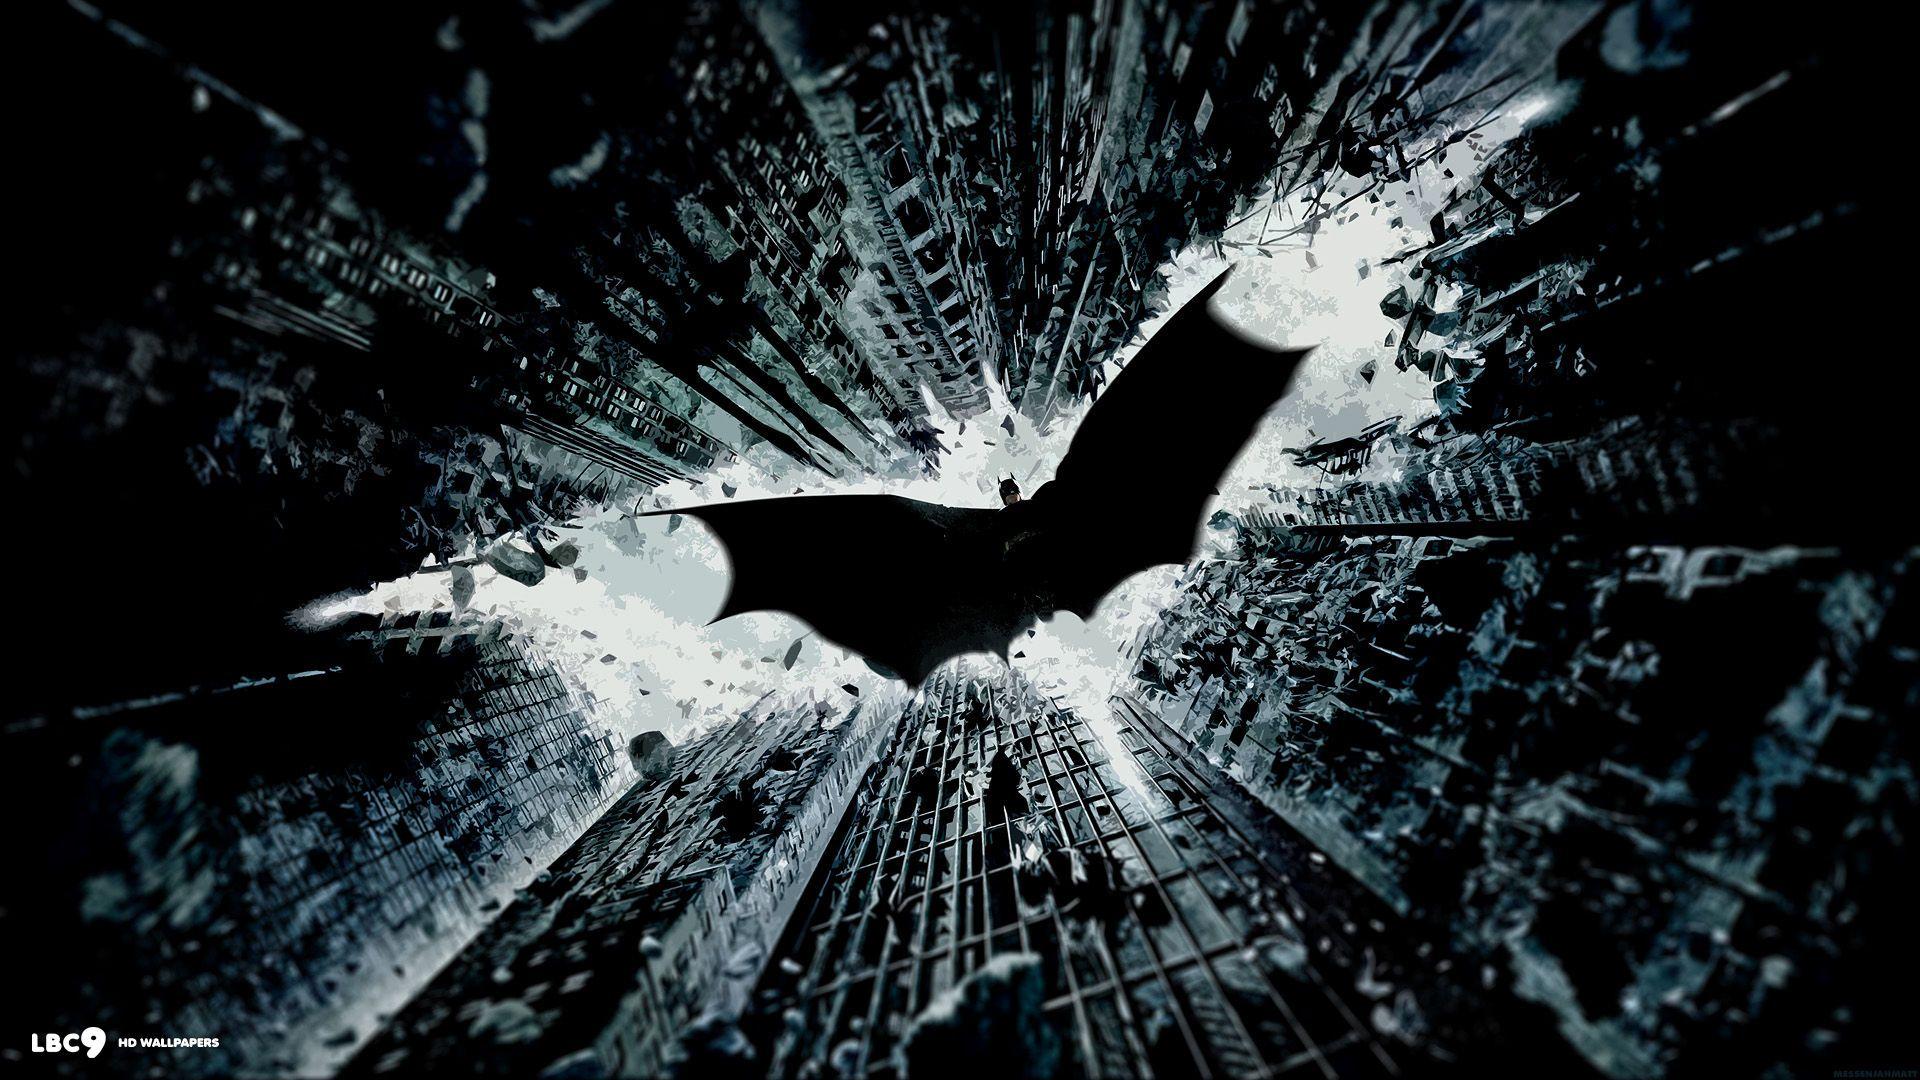 Batman Wallpapers 1080p - Wallpaper Cave